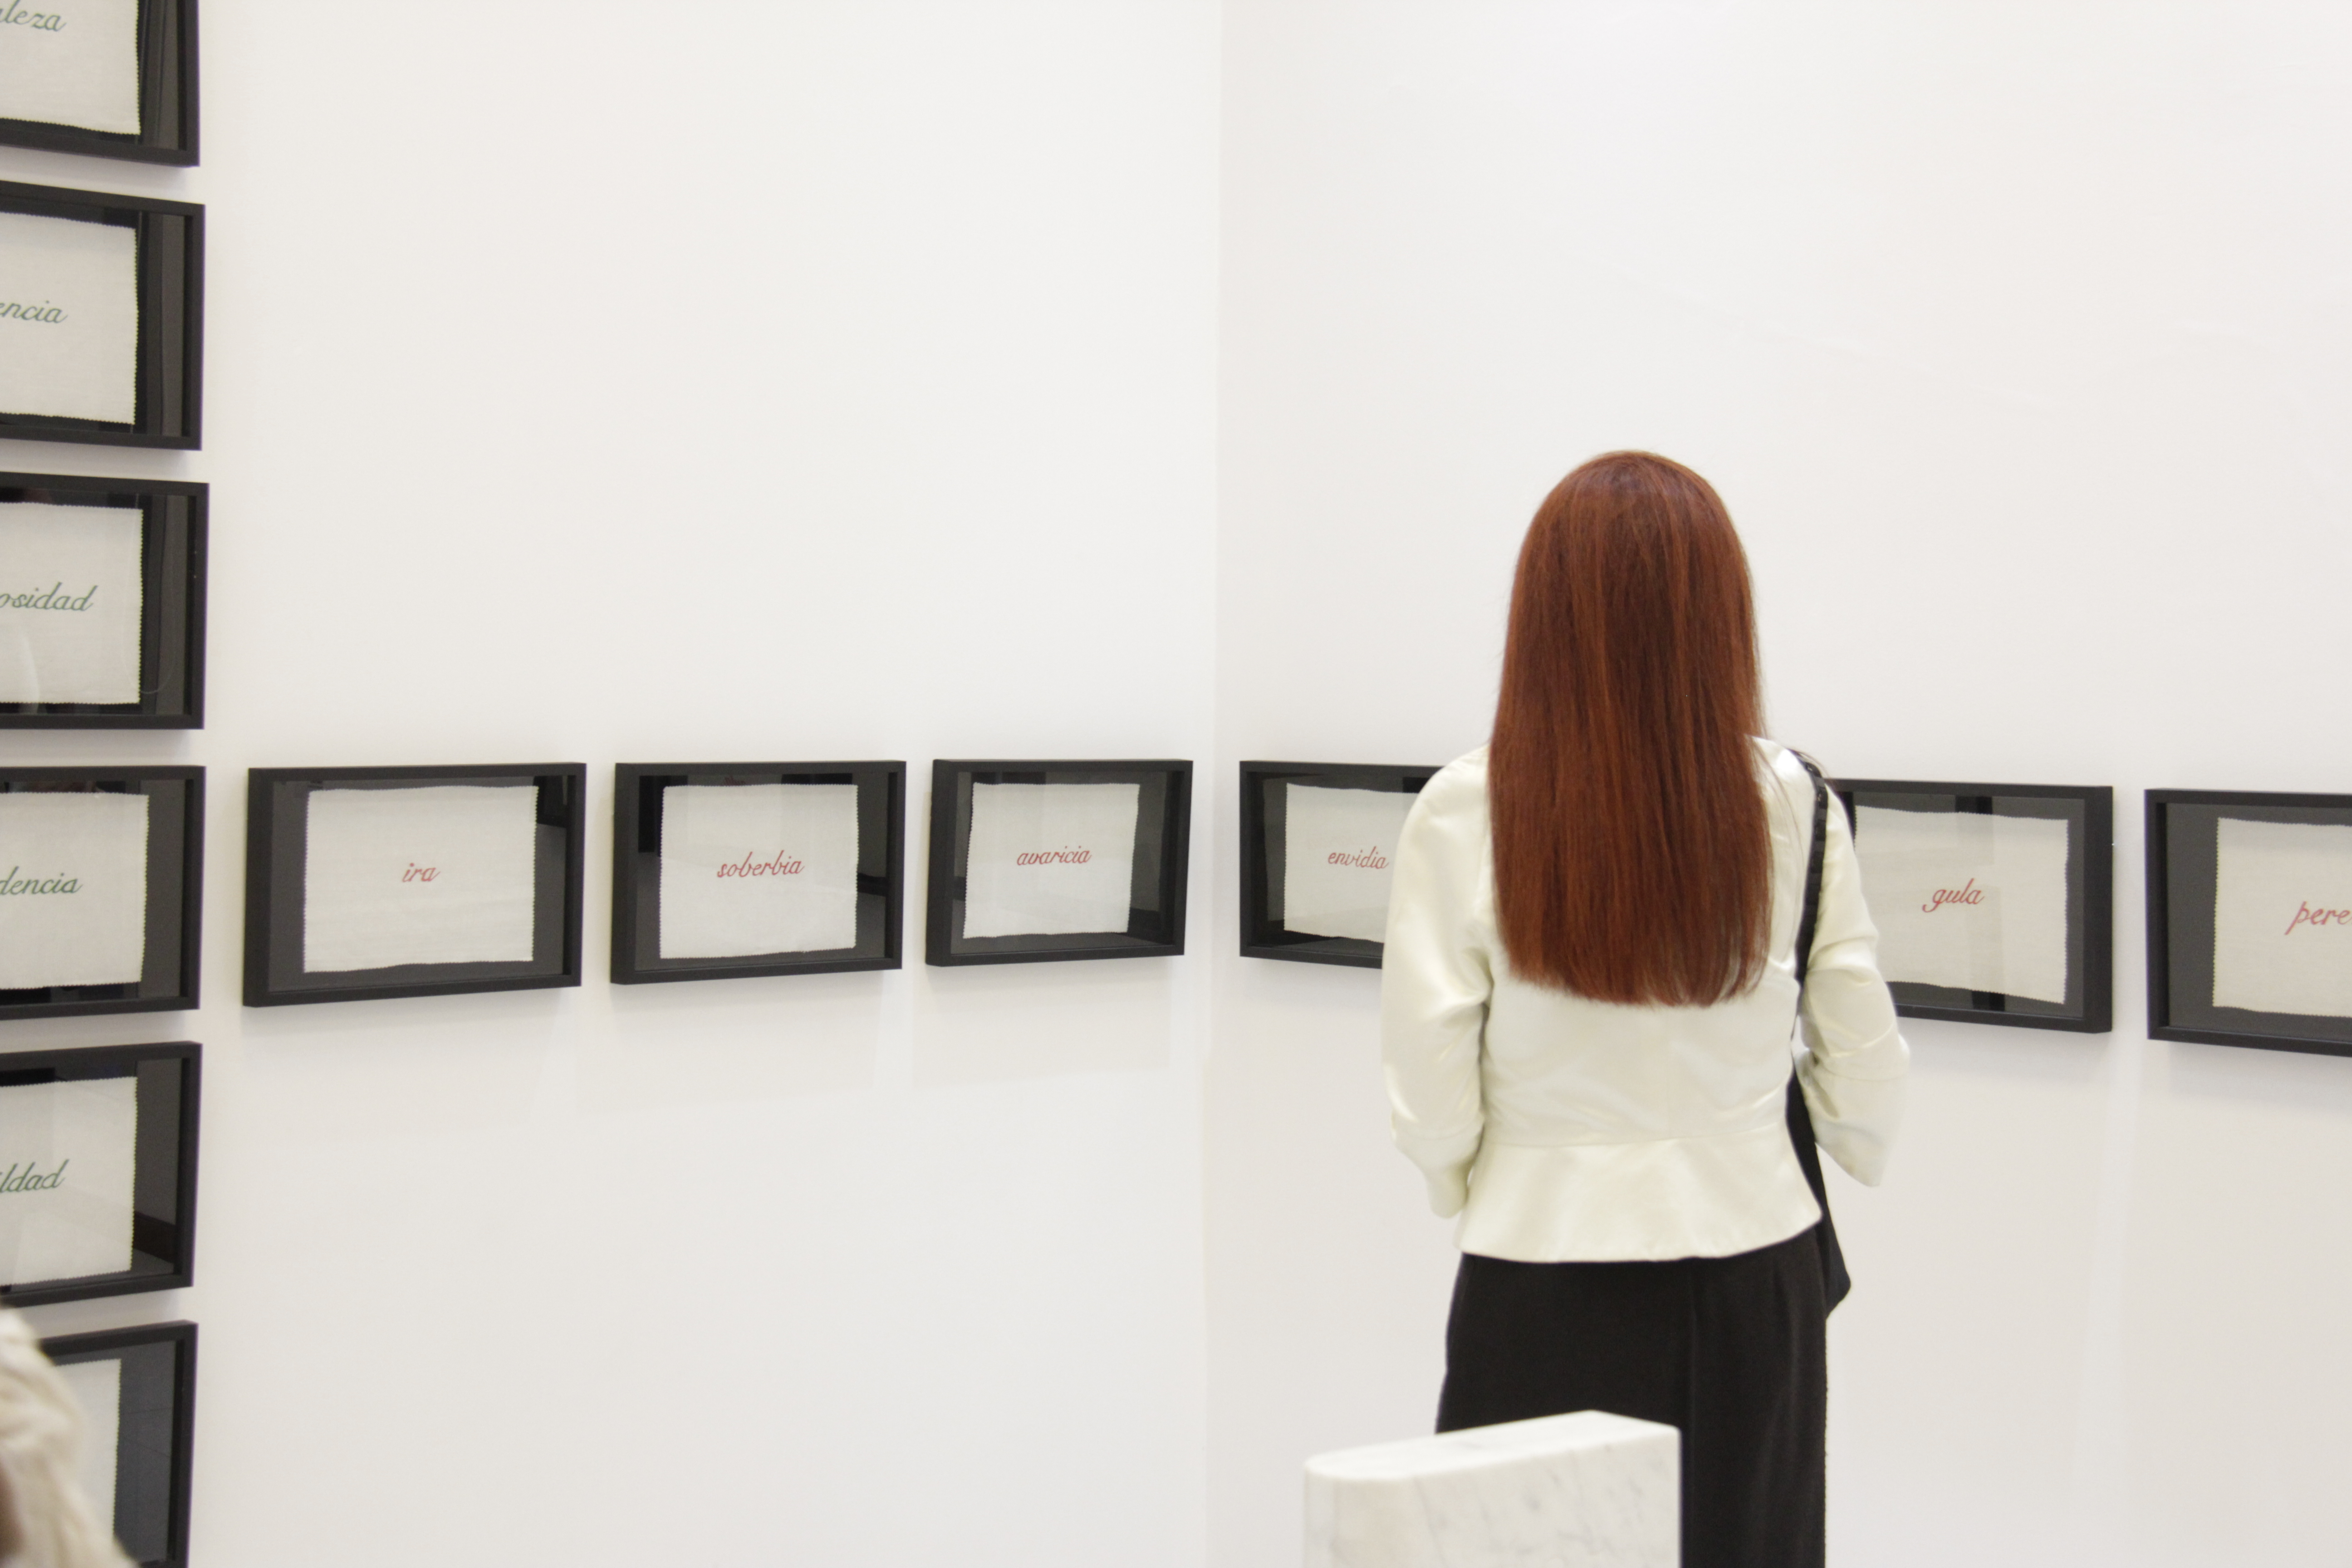 Retrospectiva Nora Iniesta / Museo de Arte Contemporáneo del Sur, 2019